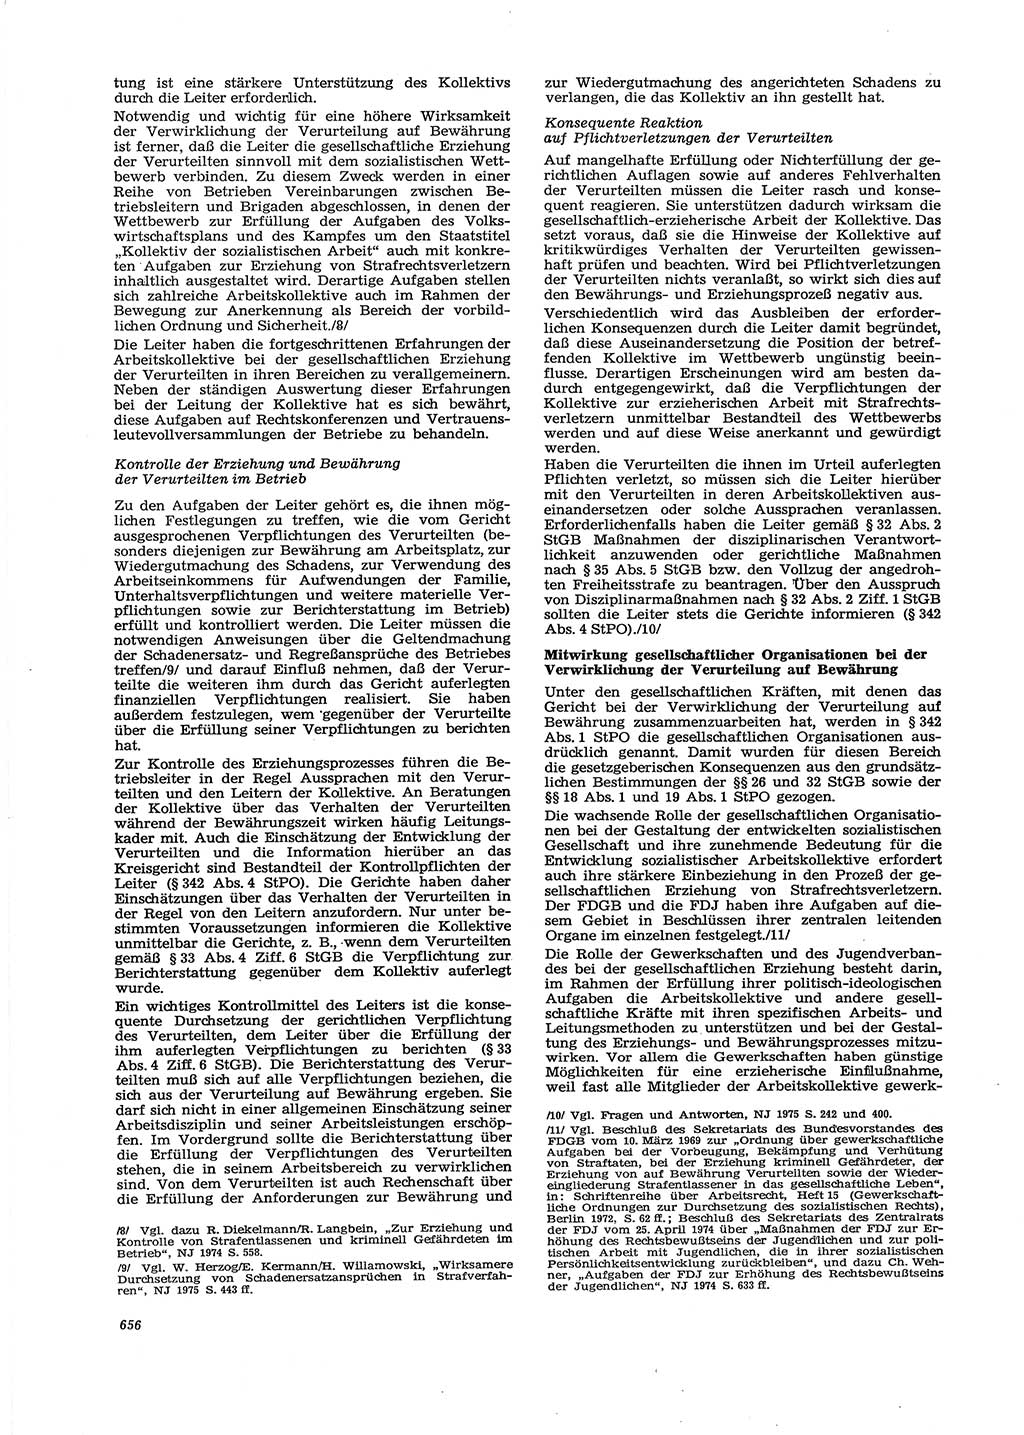 Neue Justiz (NJ), Zeitschrift für Recht und Rechtswissenschaft [Deutsche Demokratische Republik (DDR)], 29. Jahrgang 1975, Seite 656 (NJ DDR 1975, S. 656)